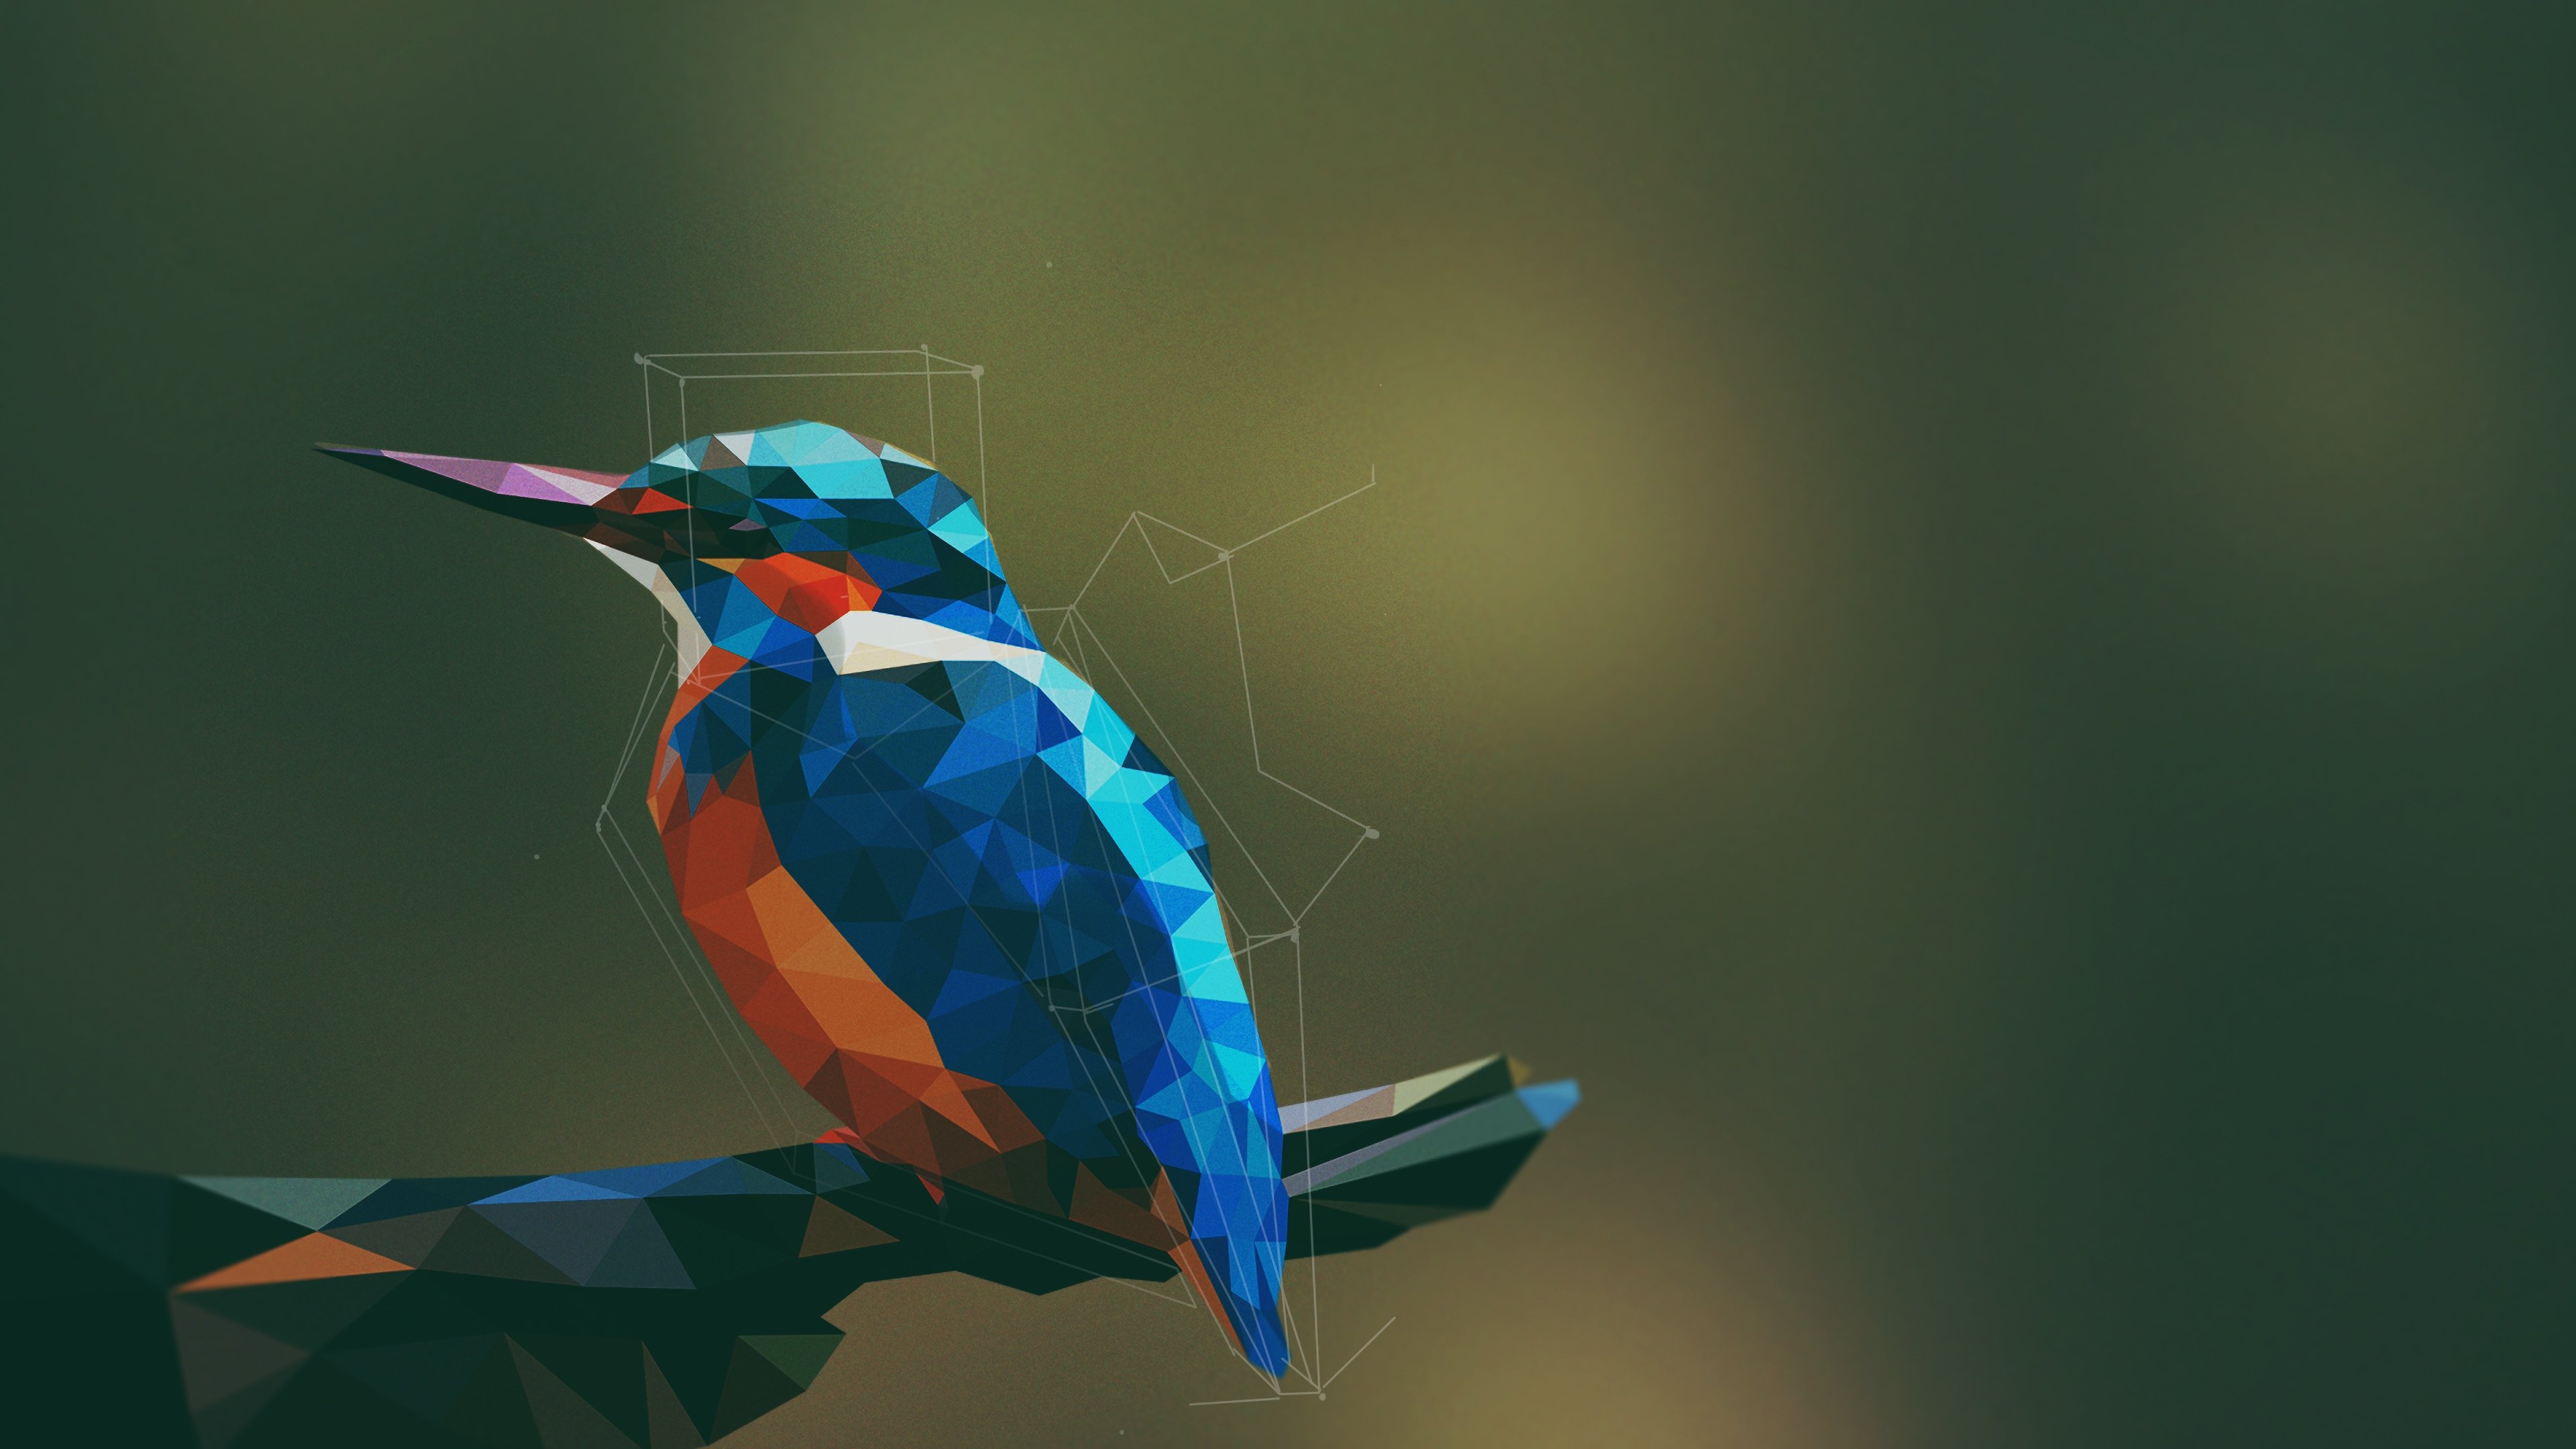 Abstract Bird Digital Art Wallpaper 4k Ultra HD